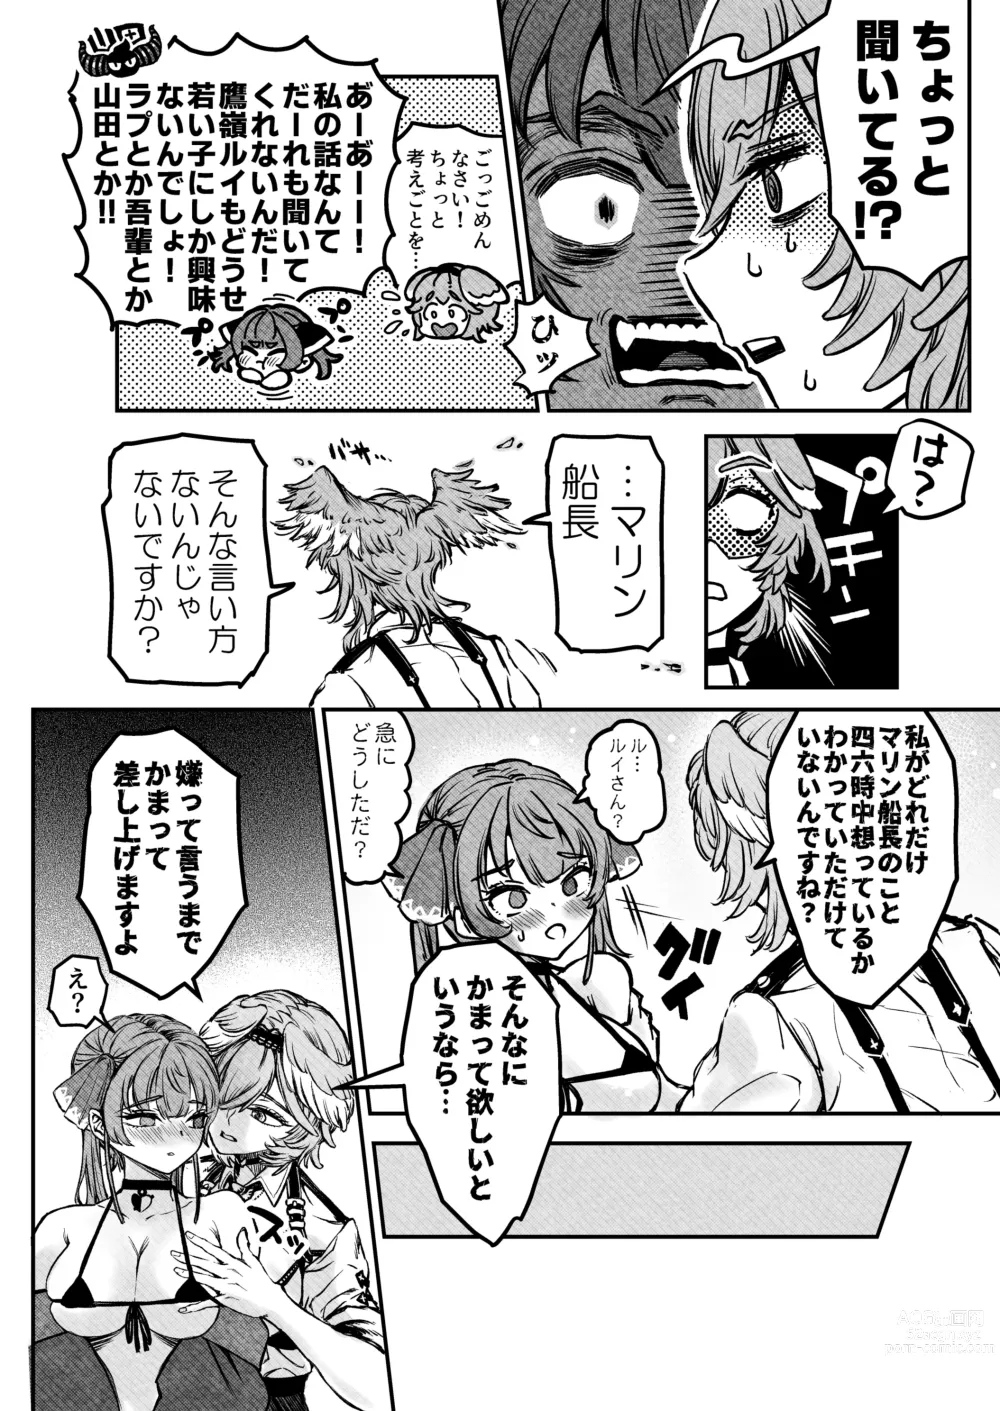 Page 8 of doujinshi Watashi ga Takarabako o Akete ii no ka ne?